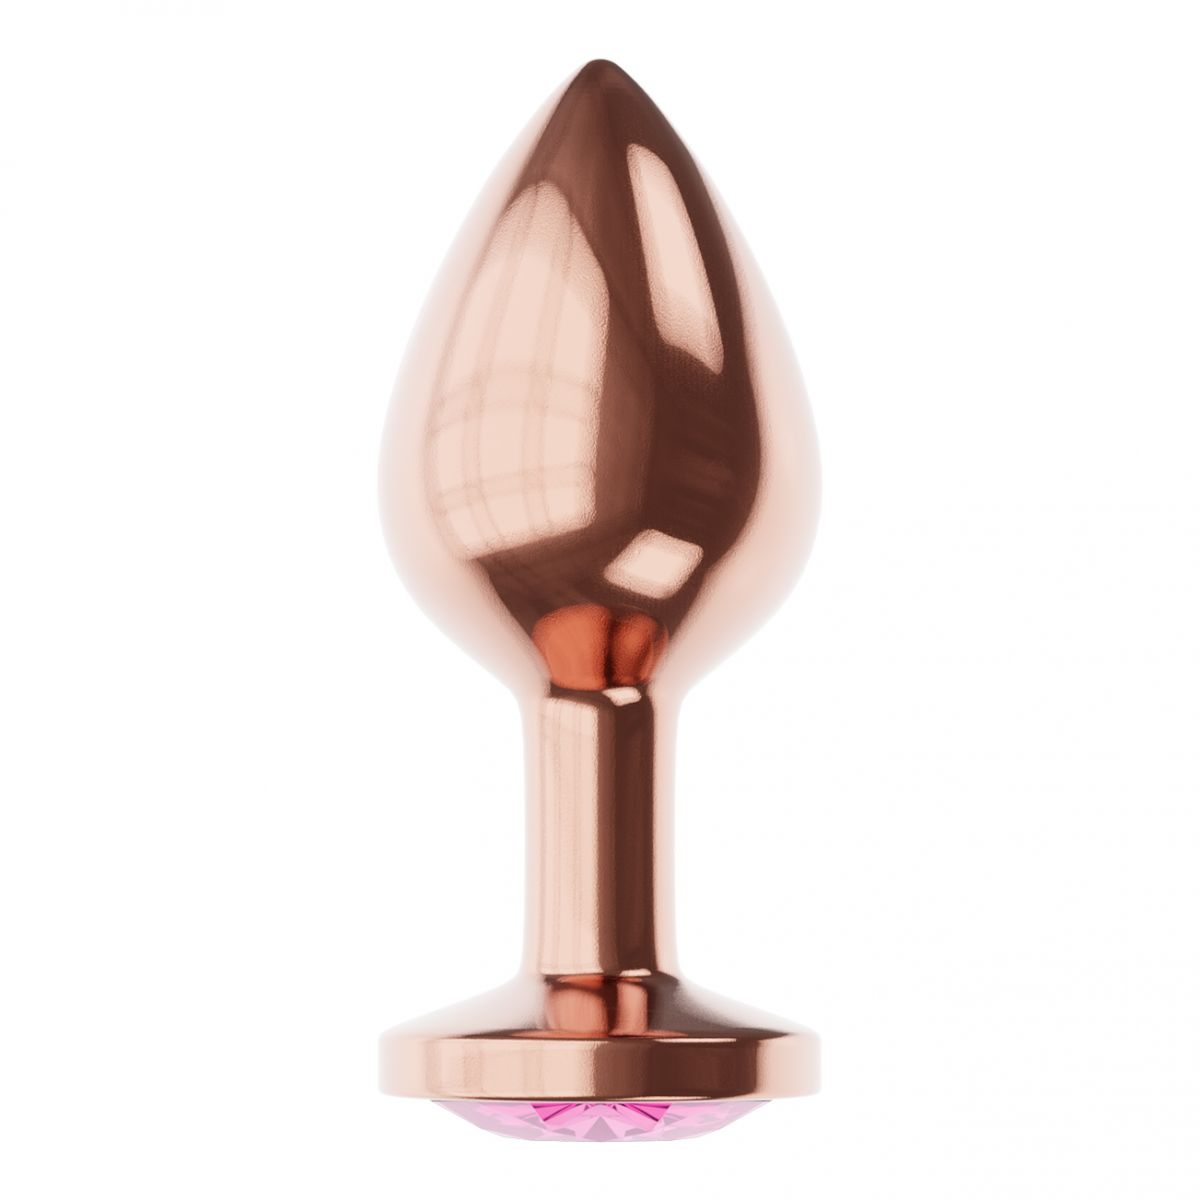 Купить Пробка цвета розового золота с лиловым кристаллом Diamond Quartz Shine S - 7,2 см. в Москве.